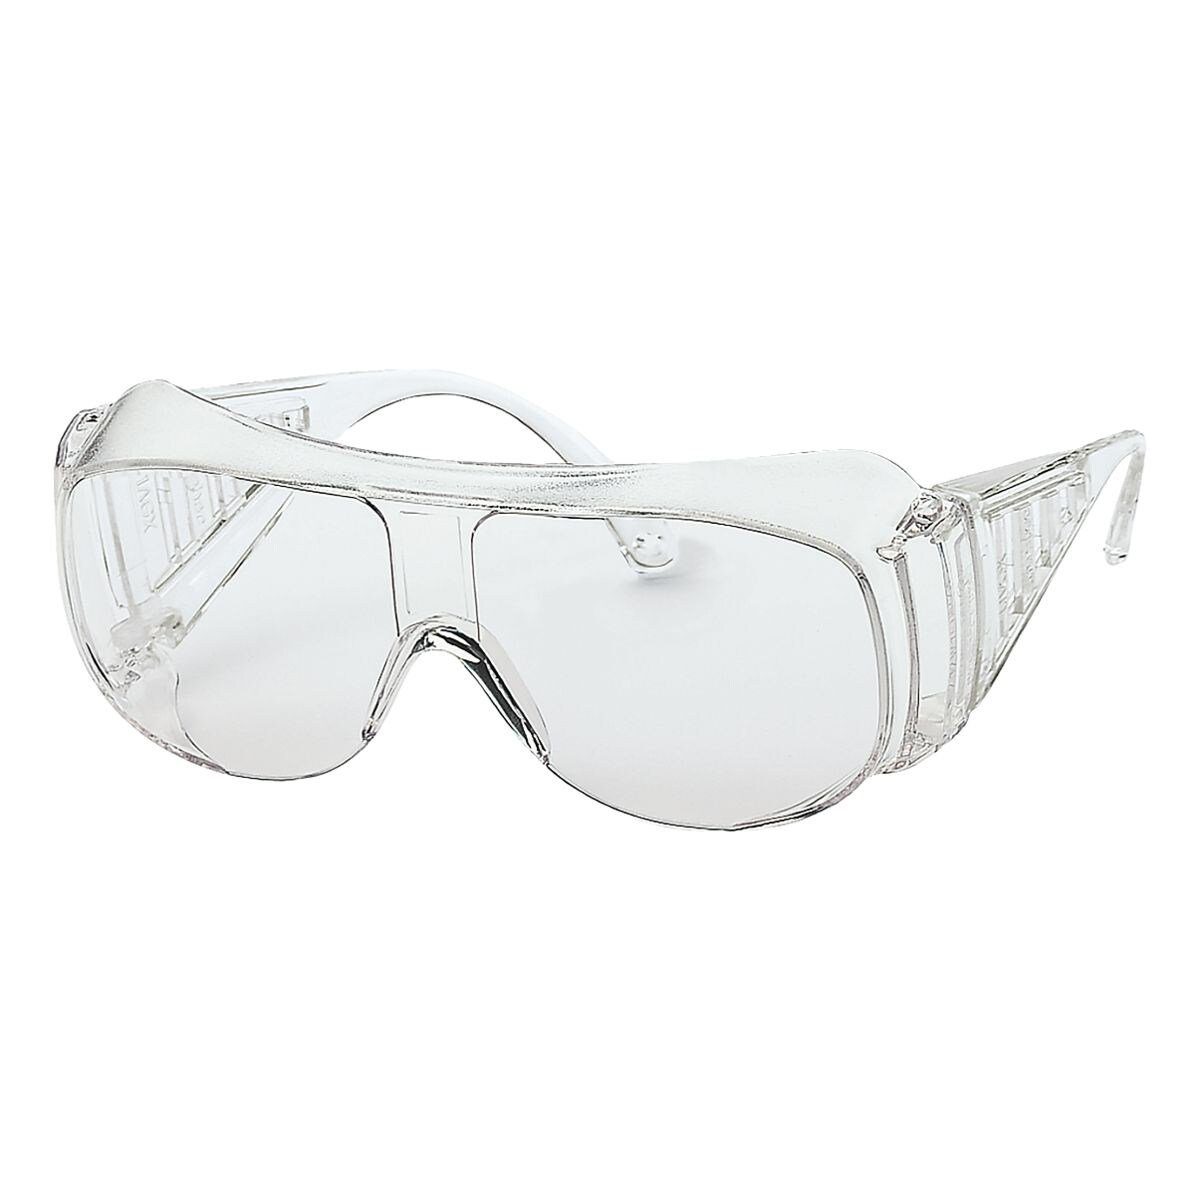 Uvex Arbeitsschutzbrille 9161, Schutzbrille mit Seitenschutz, Bügel längenverstellbar